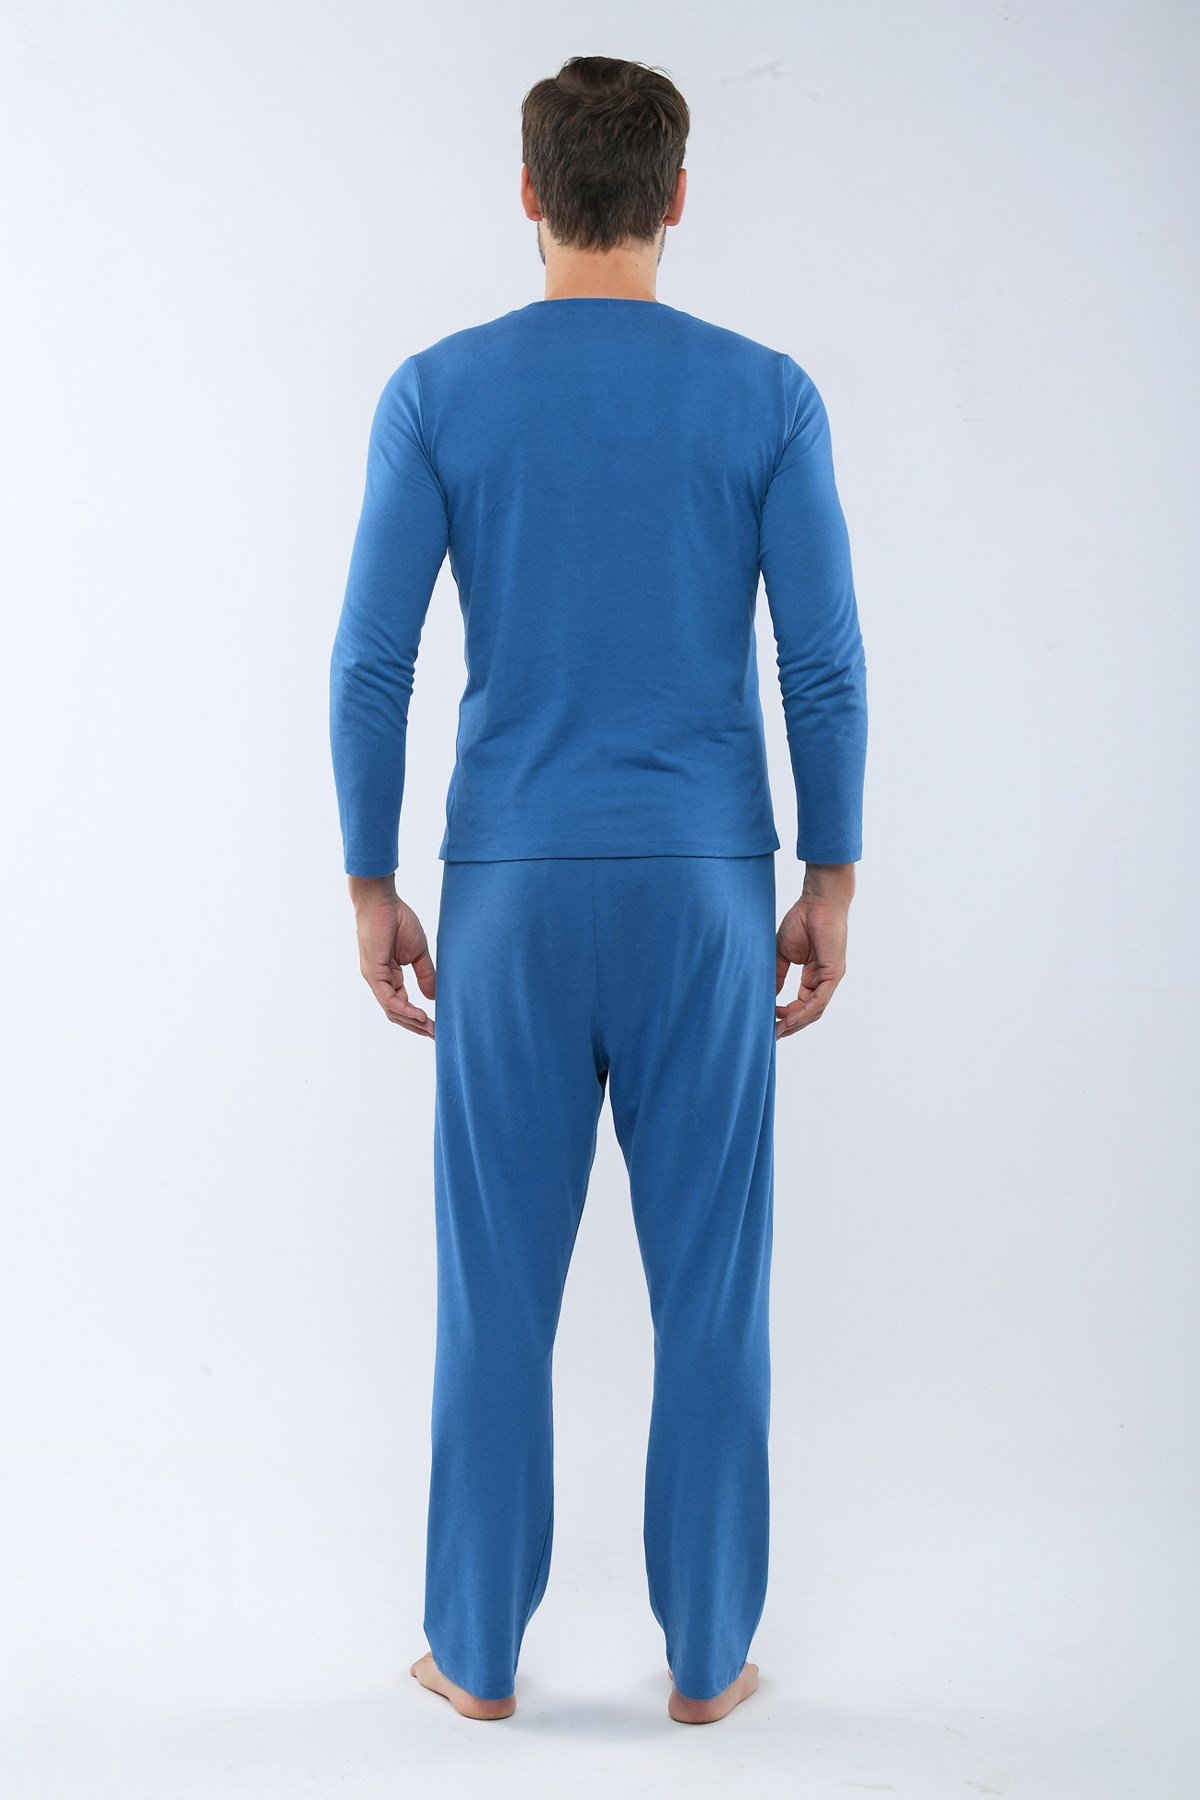 Blue Space Erkek Pijama Takımı MAVİ